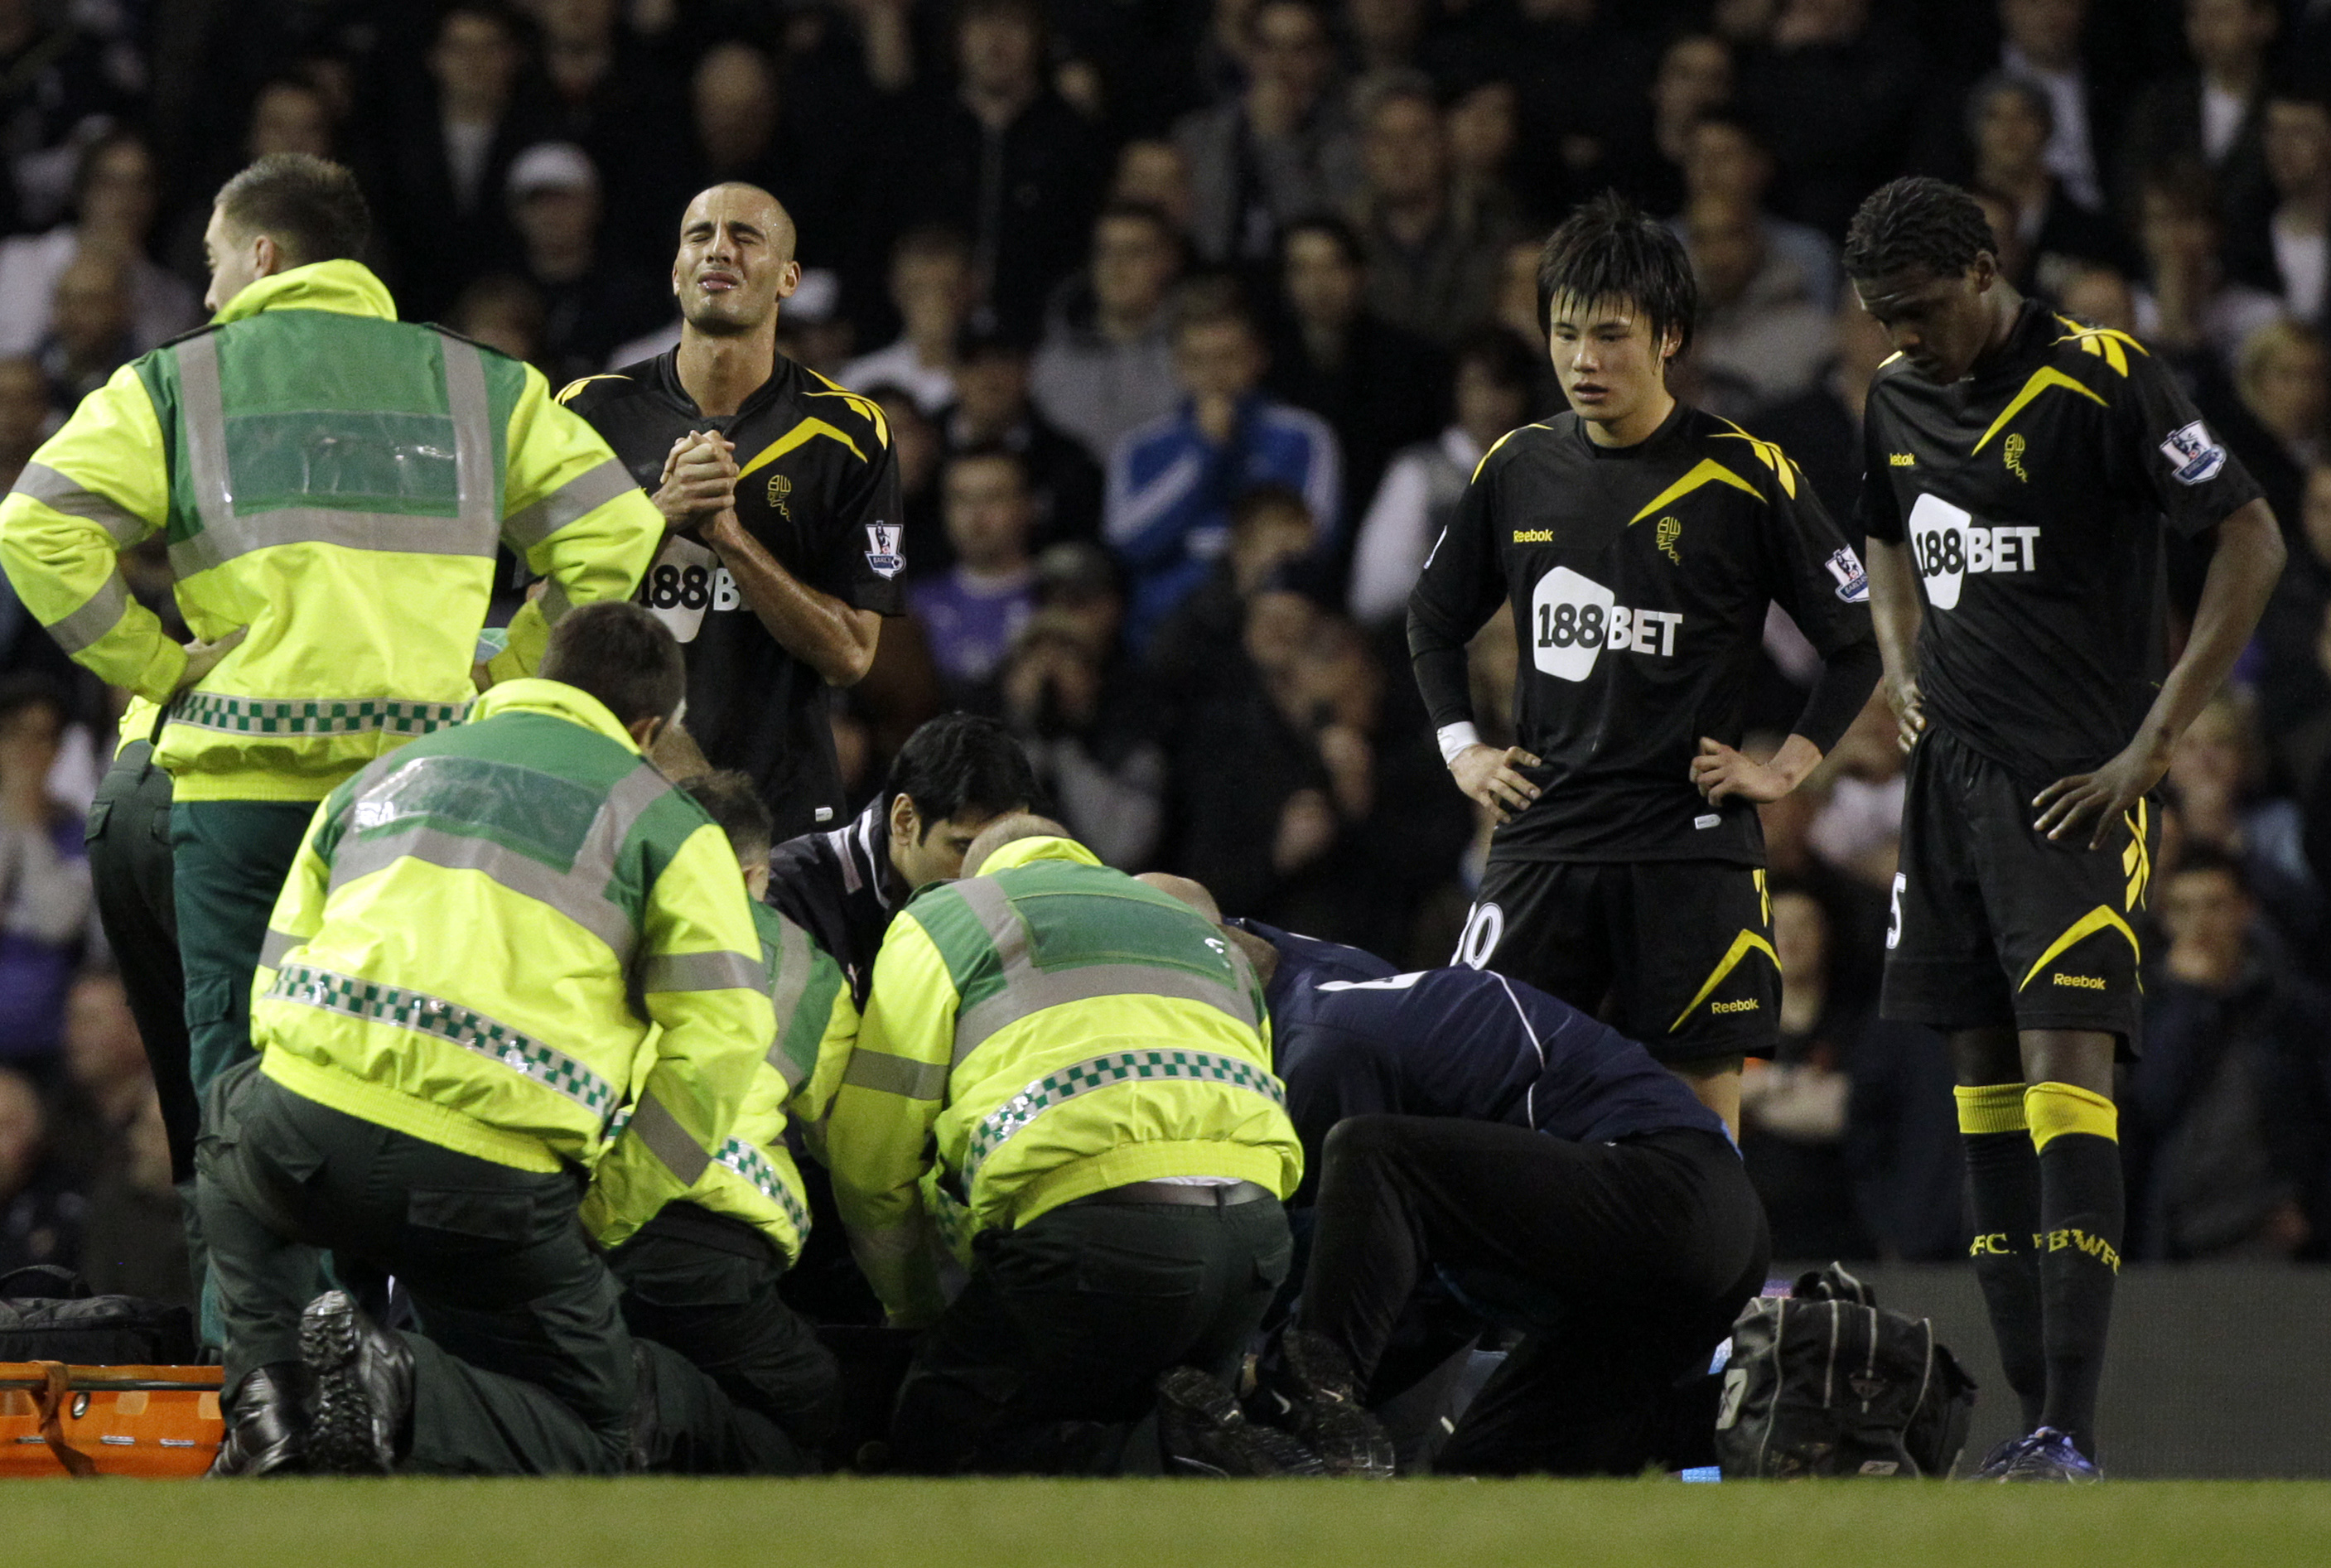 En läkare från Tottenham-läktaren sprang in på plan för att hjälpa spelaren.